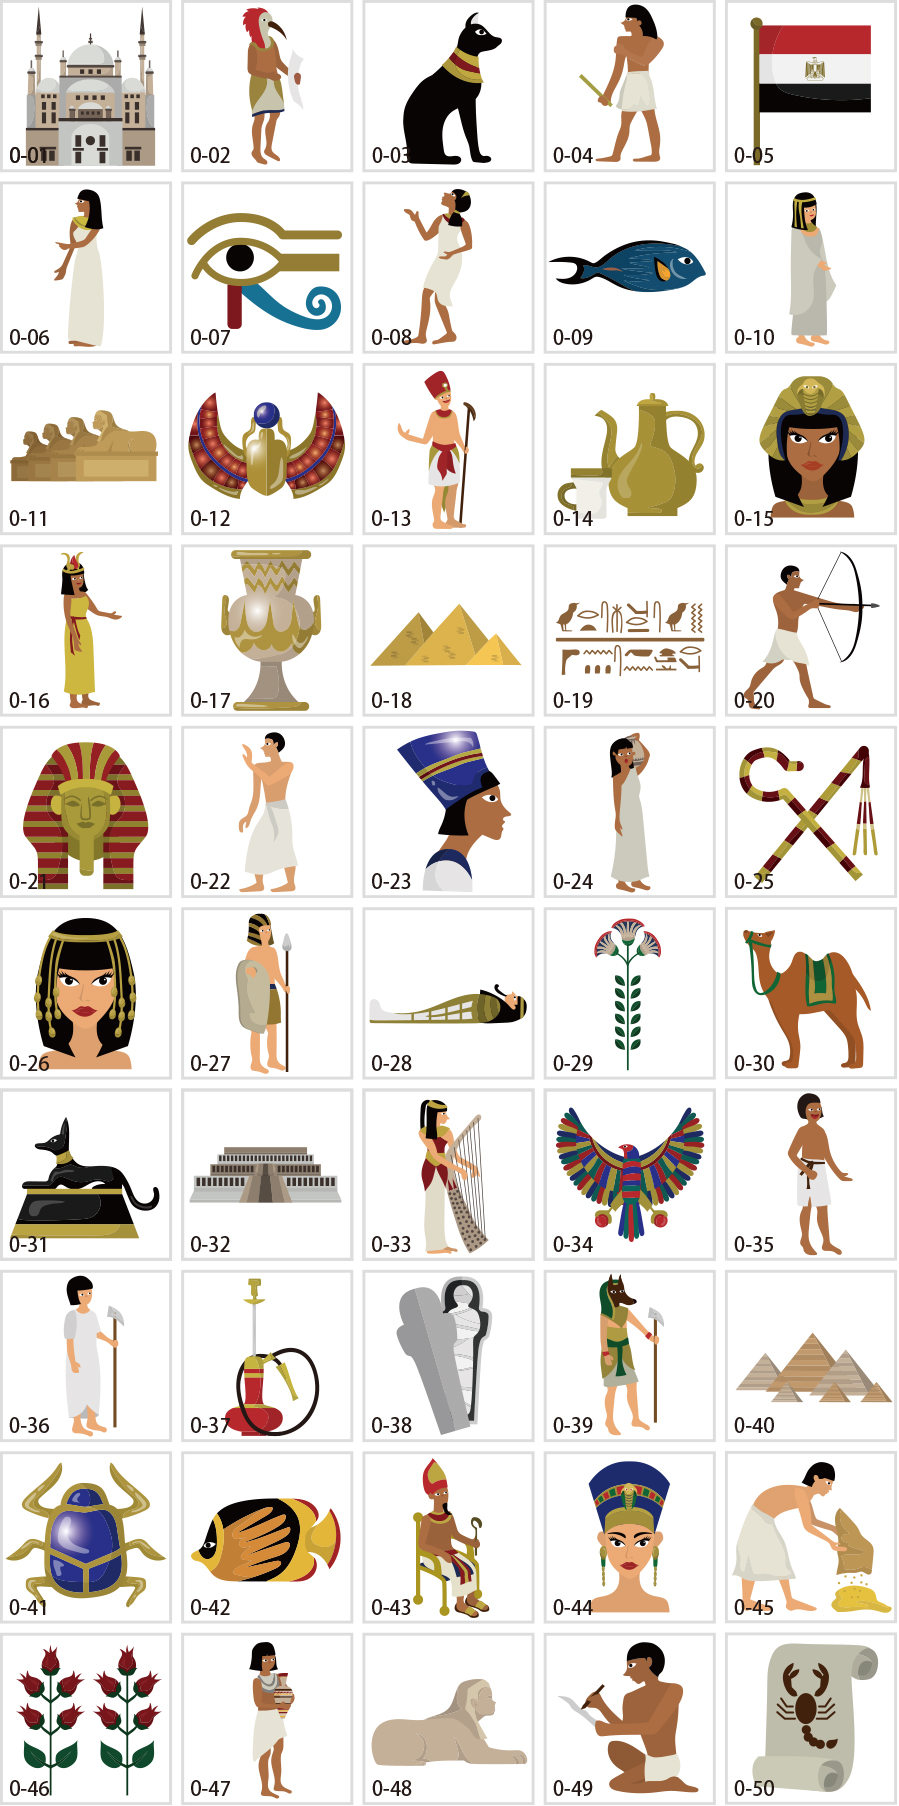 エジプトのイラスト素材